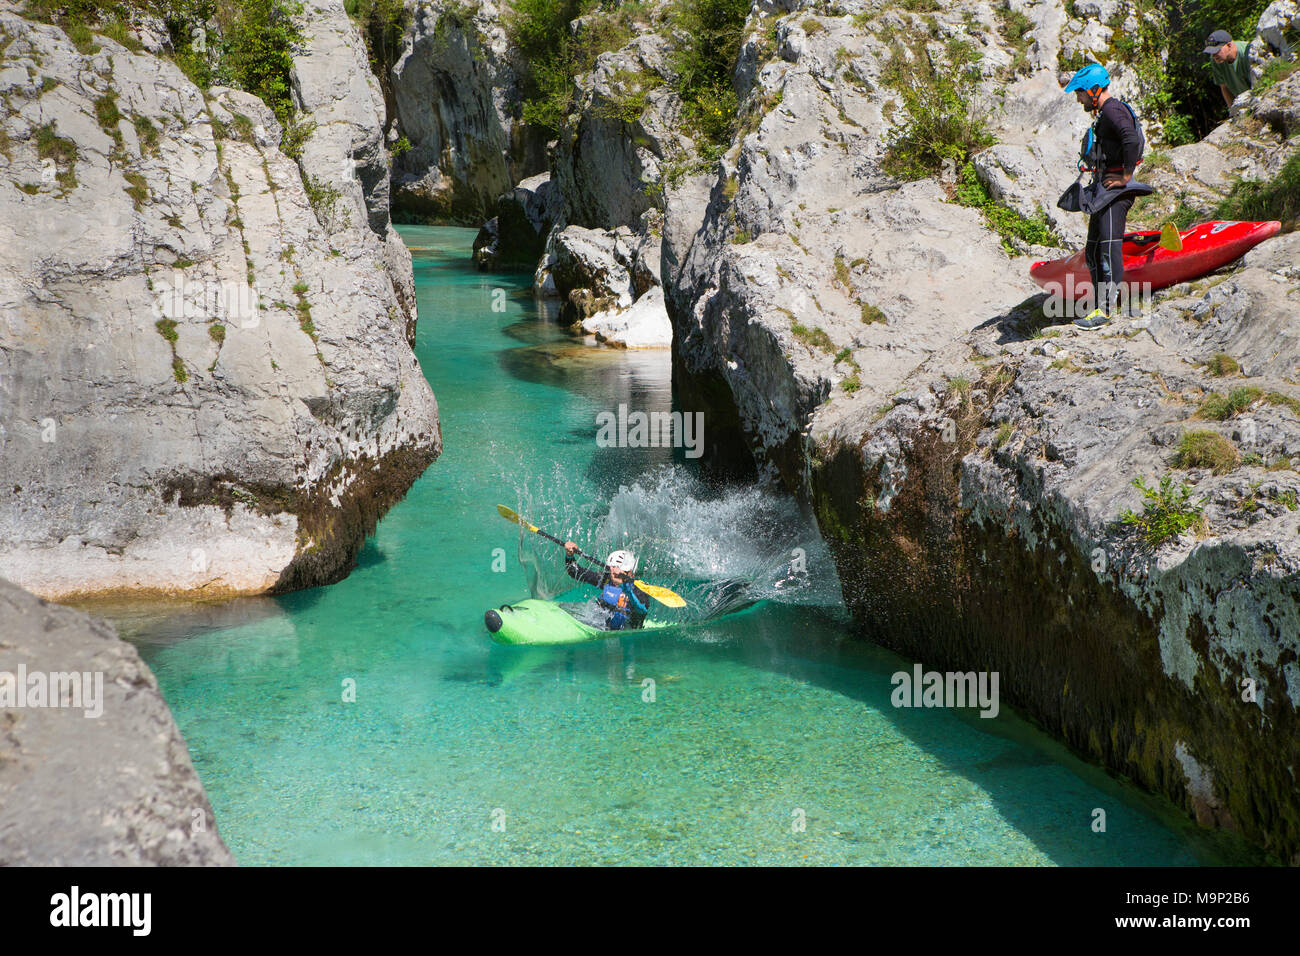 Ein Mann in einem Kajak ist ins Wasser springen, während ein anderer Mann beobachtet wird. Die smaragdgrüne Soca in der Nähe von Bovec in Slowenien, in der Triglav Gebirge mit Ursprung, ist berühmt für alle Arten von Wassersport. Stockfoto